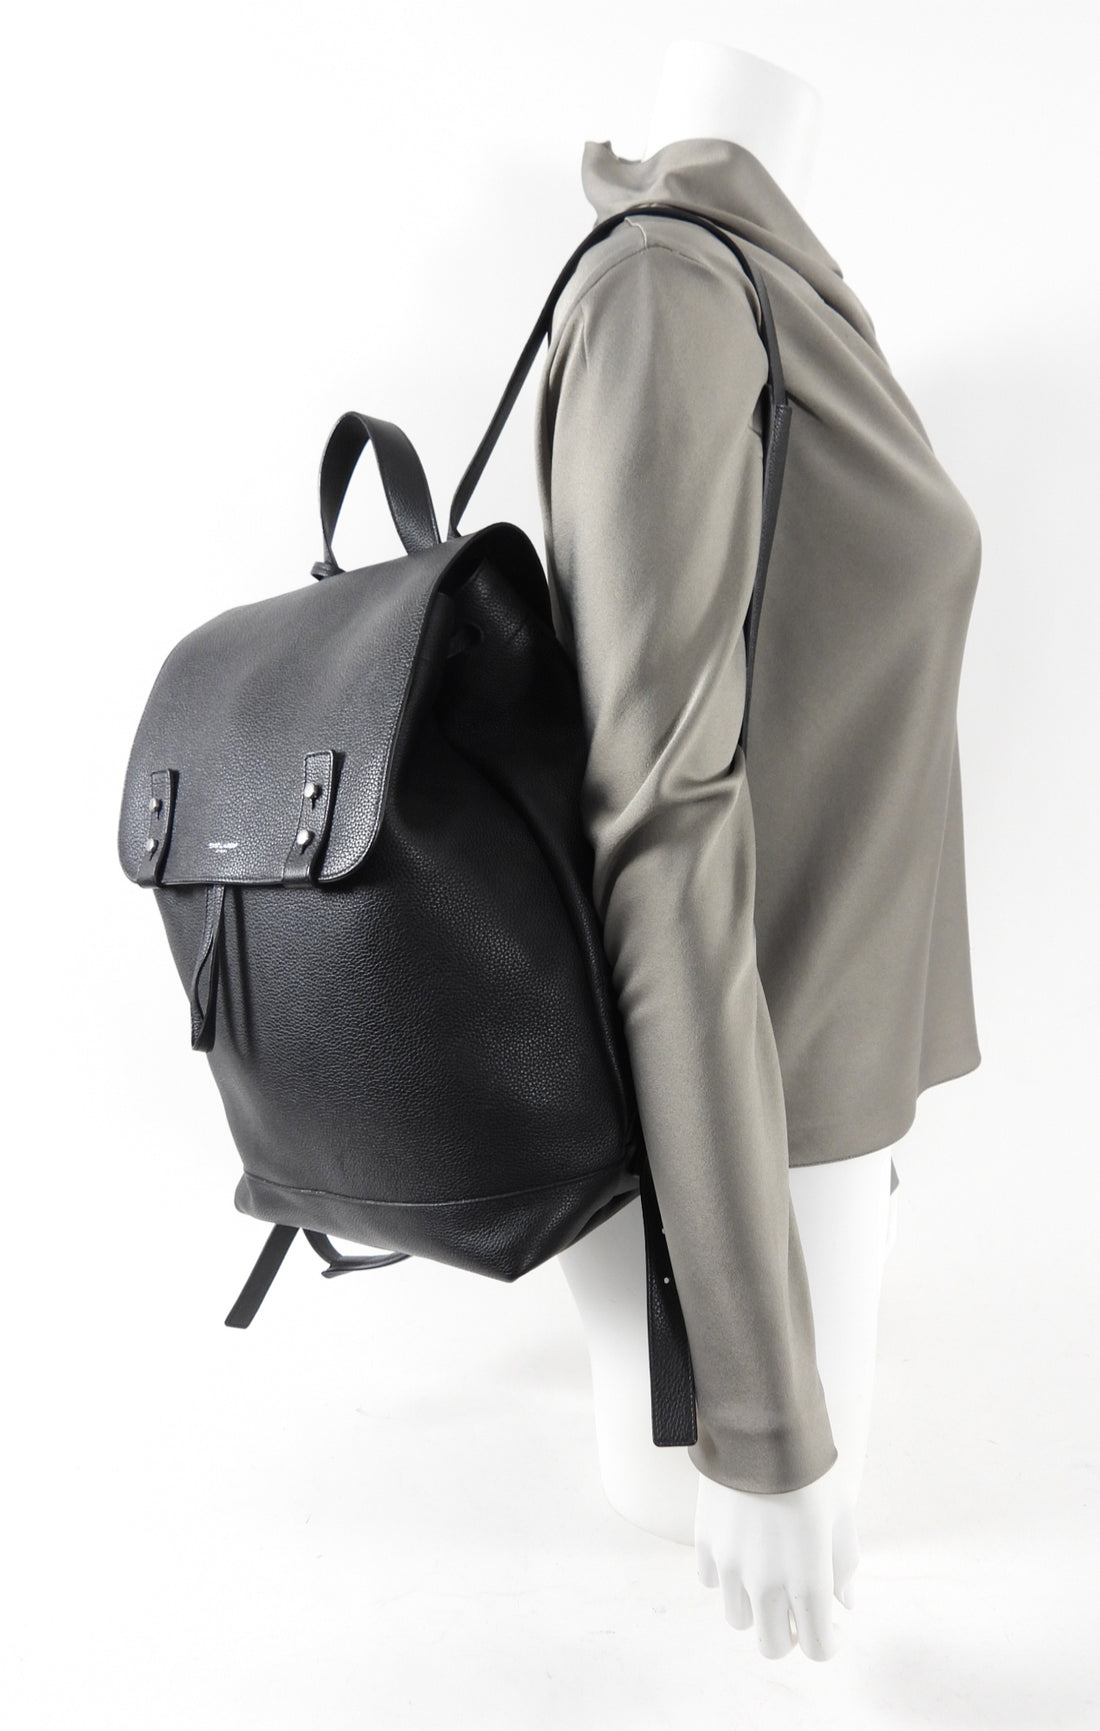 SAINT LAURENT backpack in grained leather, Saint Laurent